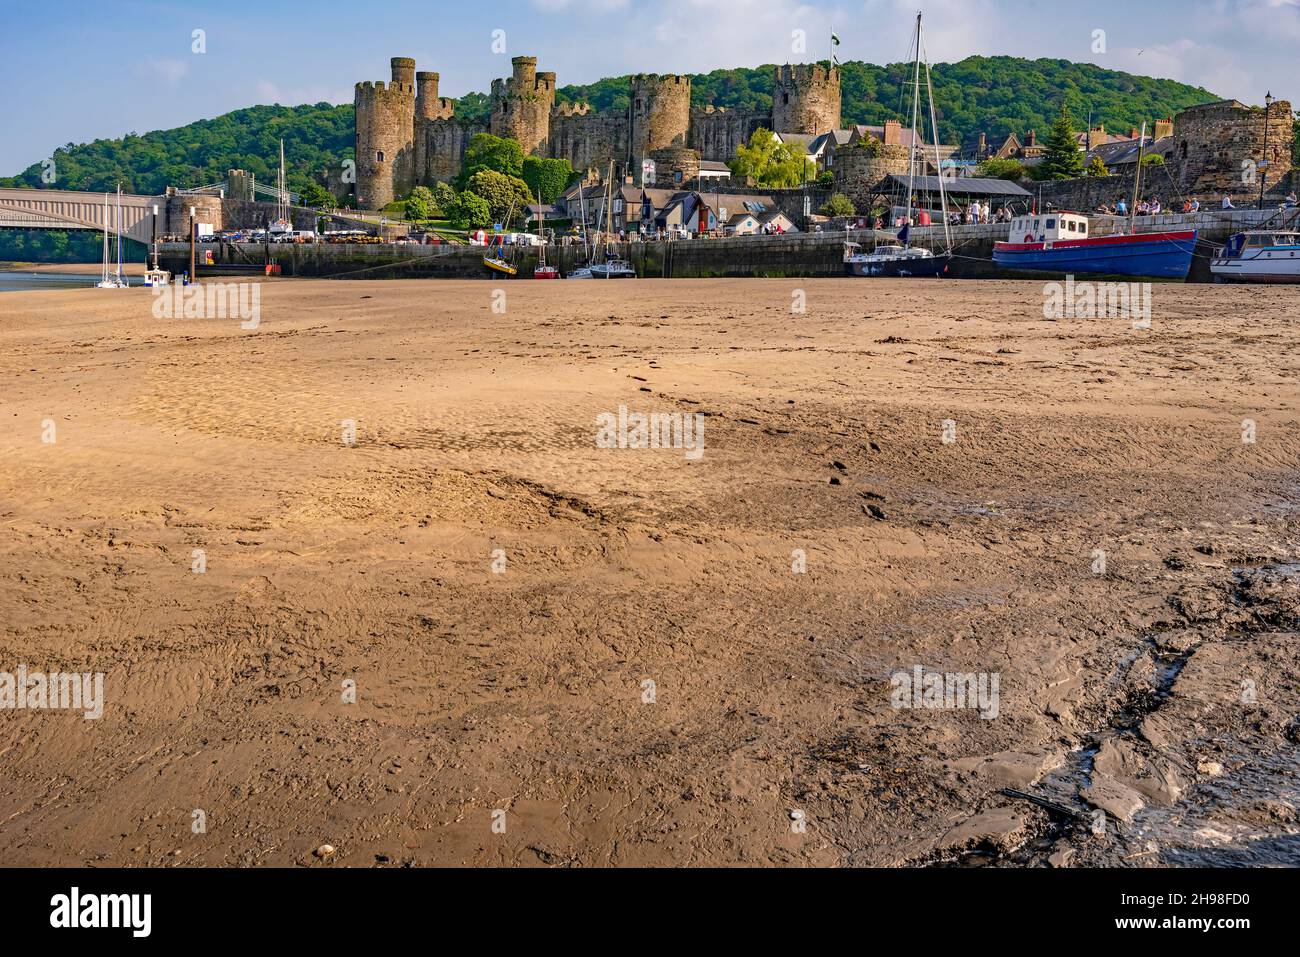 Château et port de Conway sur la rivière Conwy à Gwynedd, dans le nord du pays de Galles. Banque D'Images